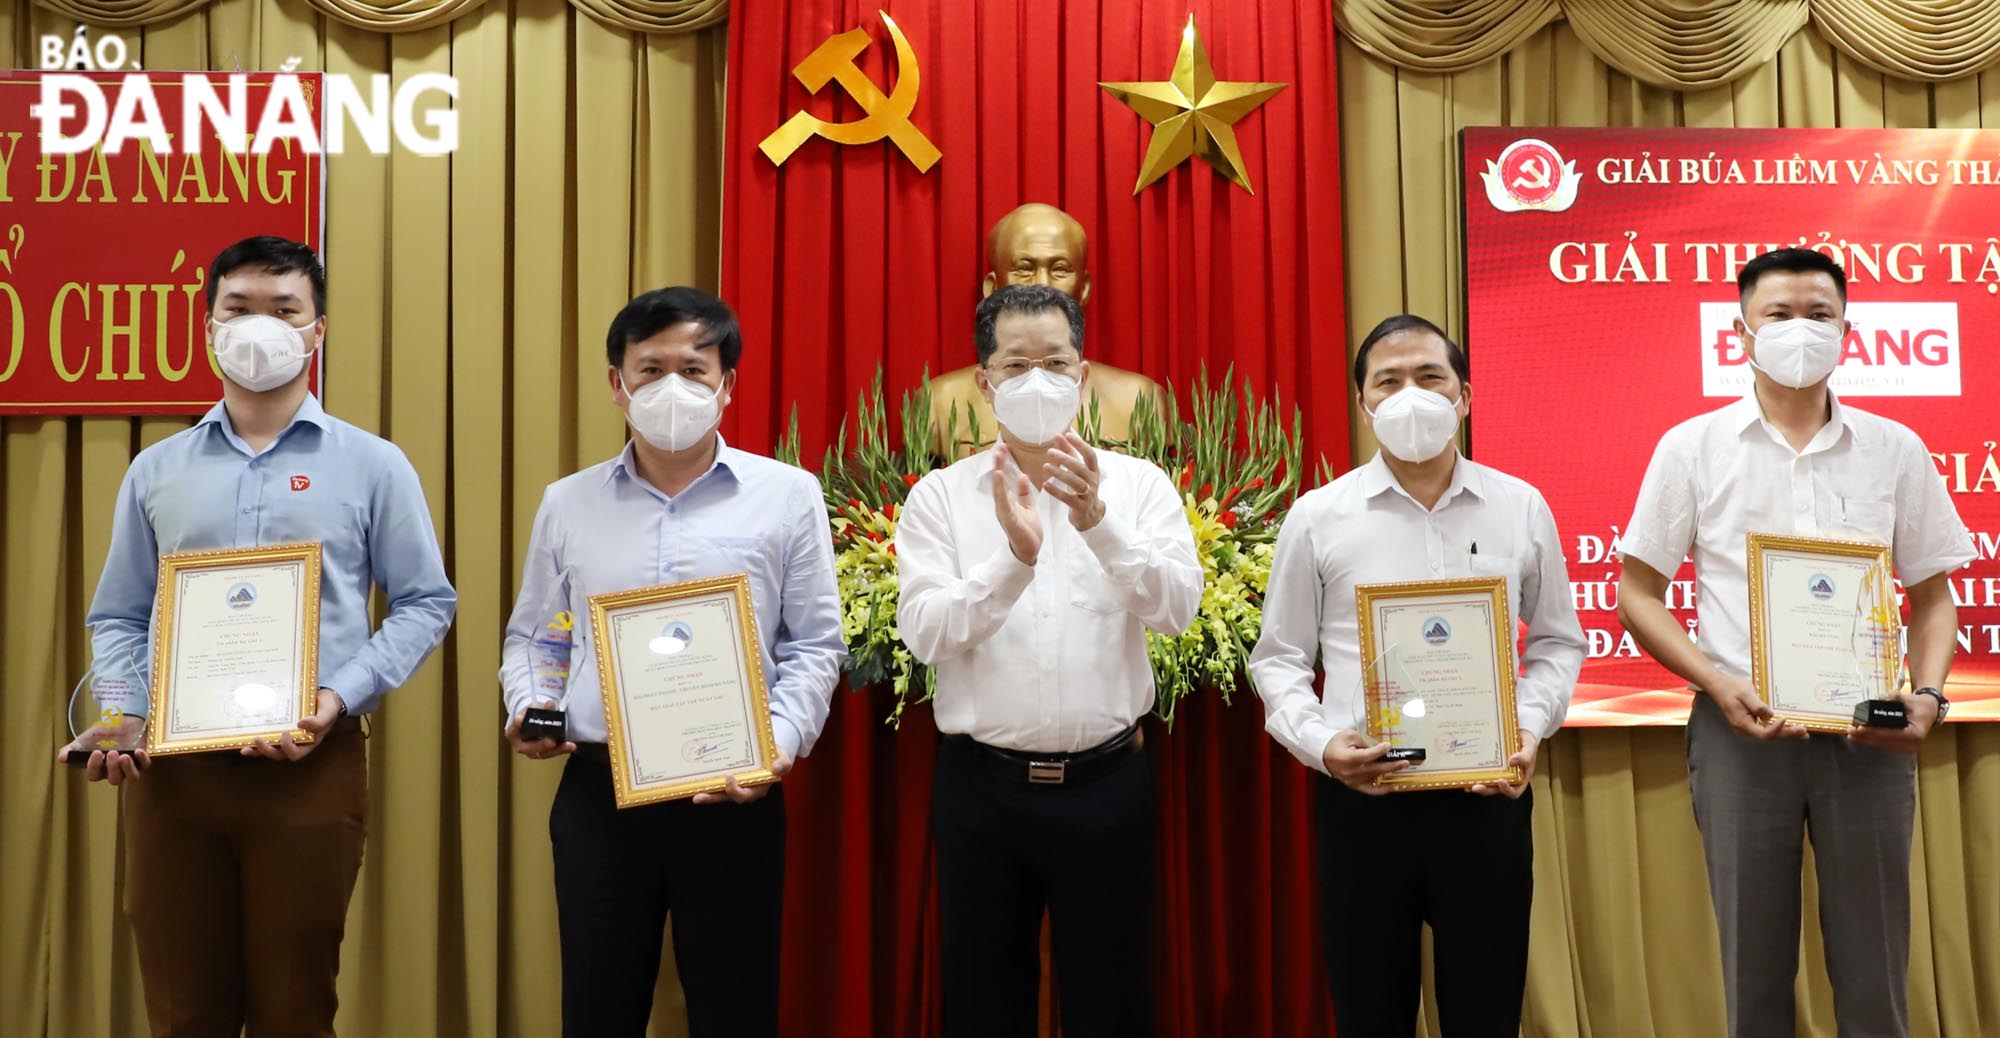 Bí thư Thành ủy Nguyễn Văn Quảng (giữa) trao giải tâp thể xuất sắc cho 2 tập thể và 2 giải Nhất cho các cá nhân đoạt giải. Ảnh: NGỌC PHÚ